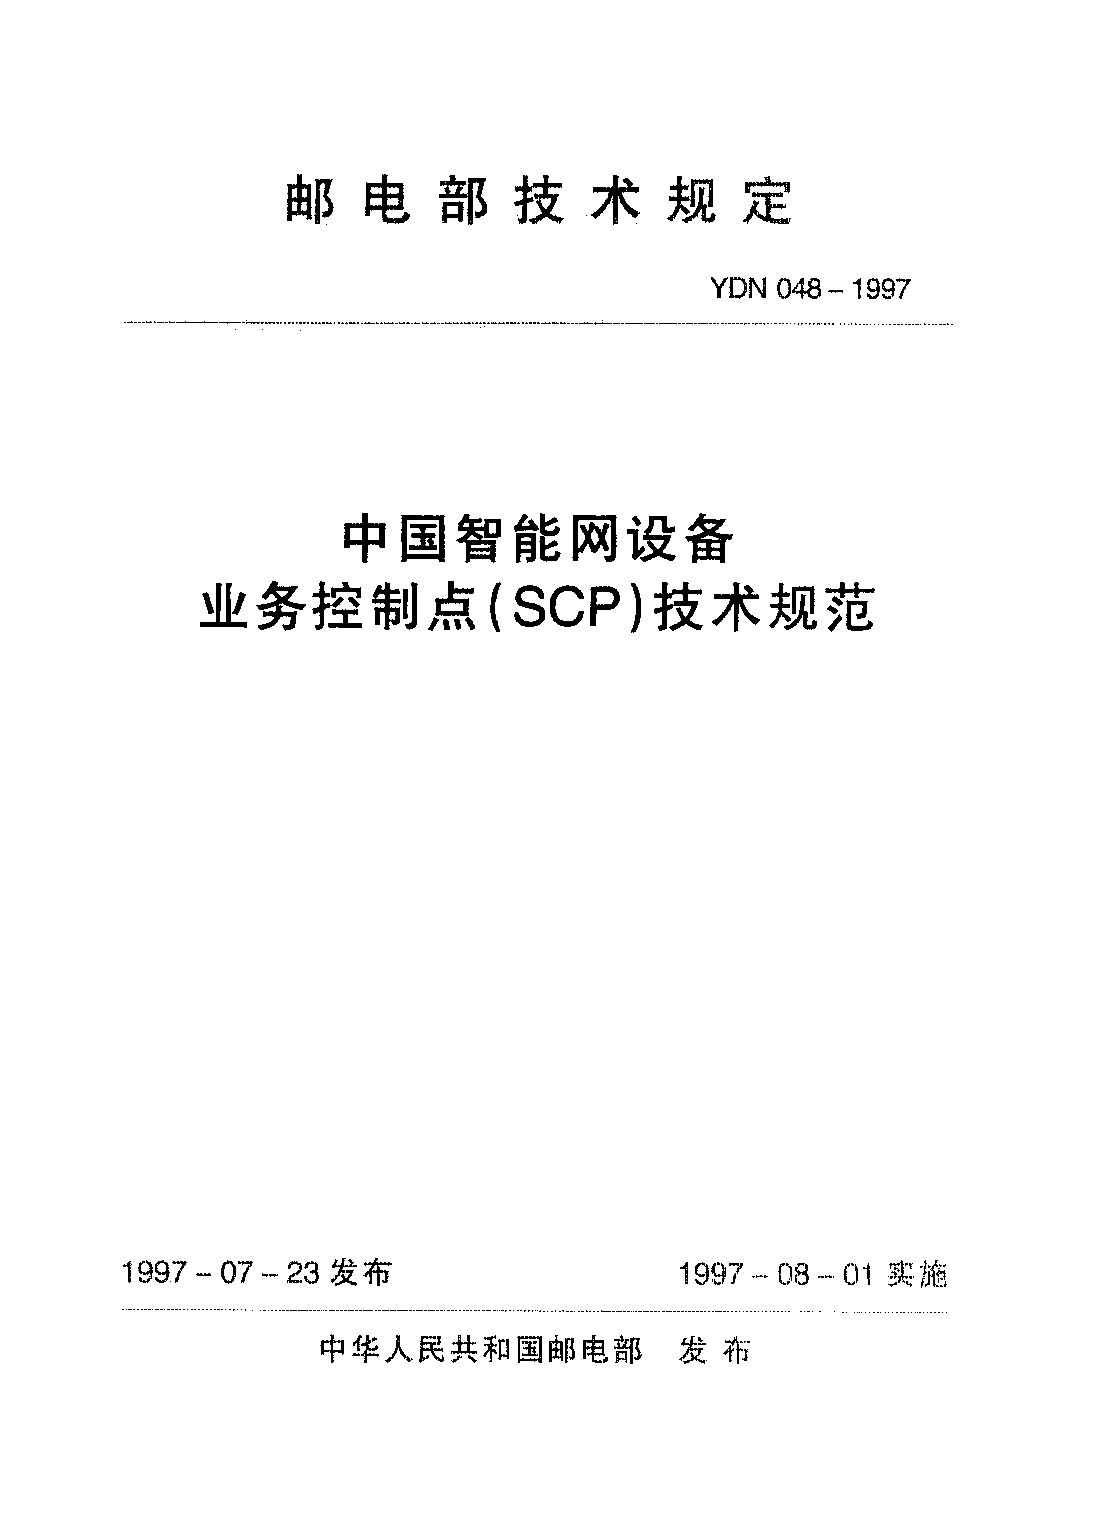 YDN 048-1997封面图